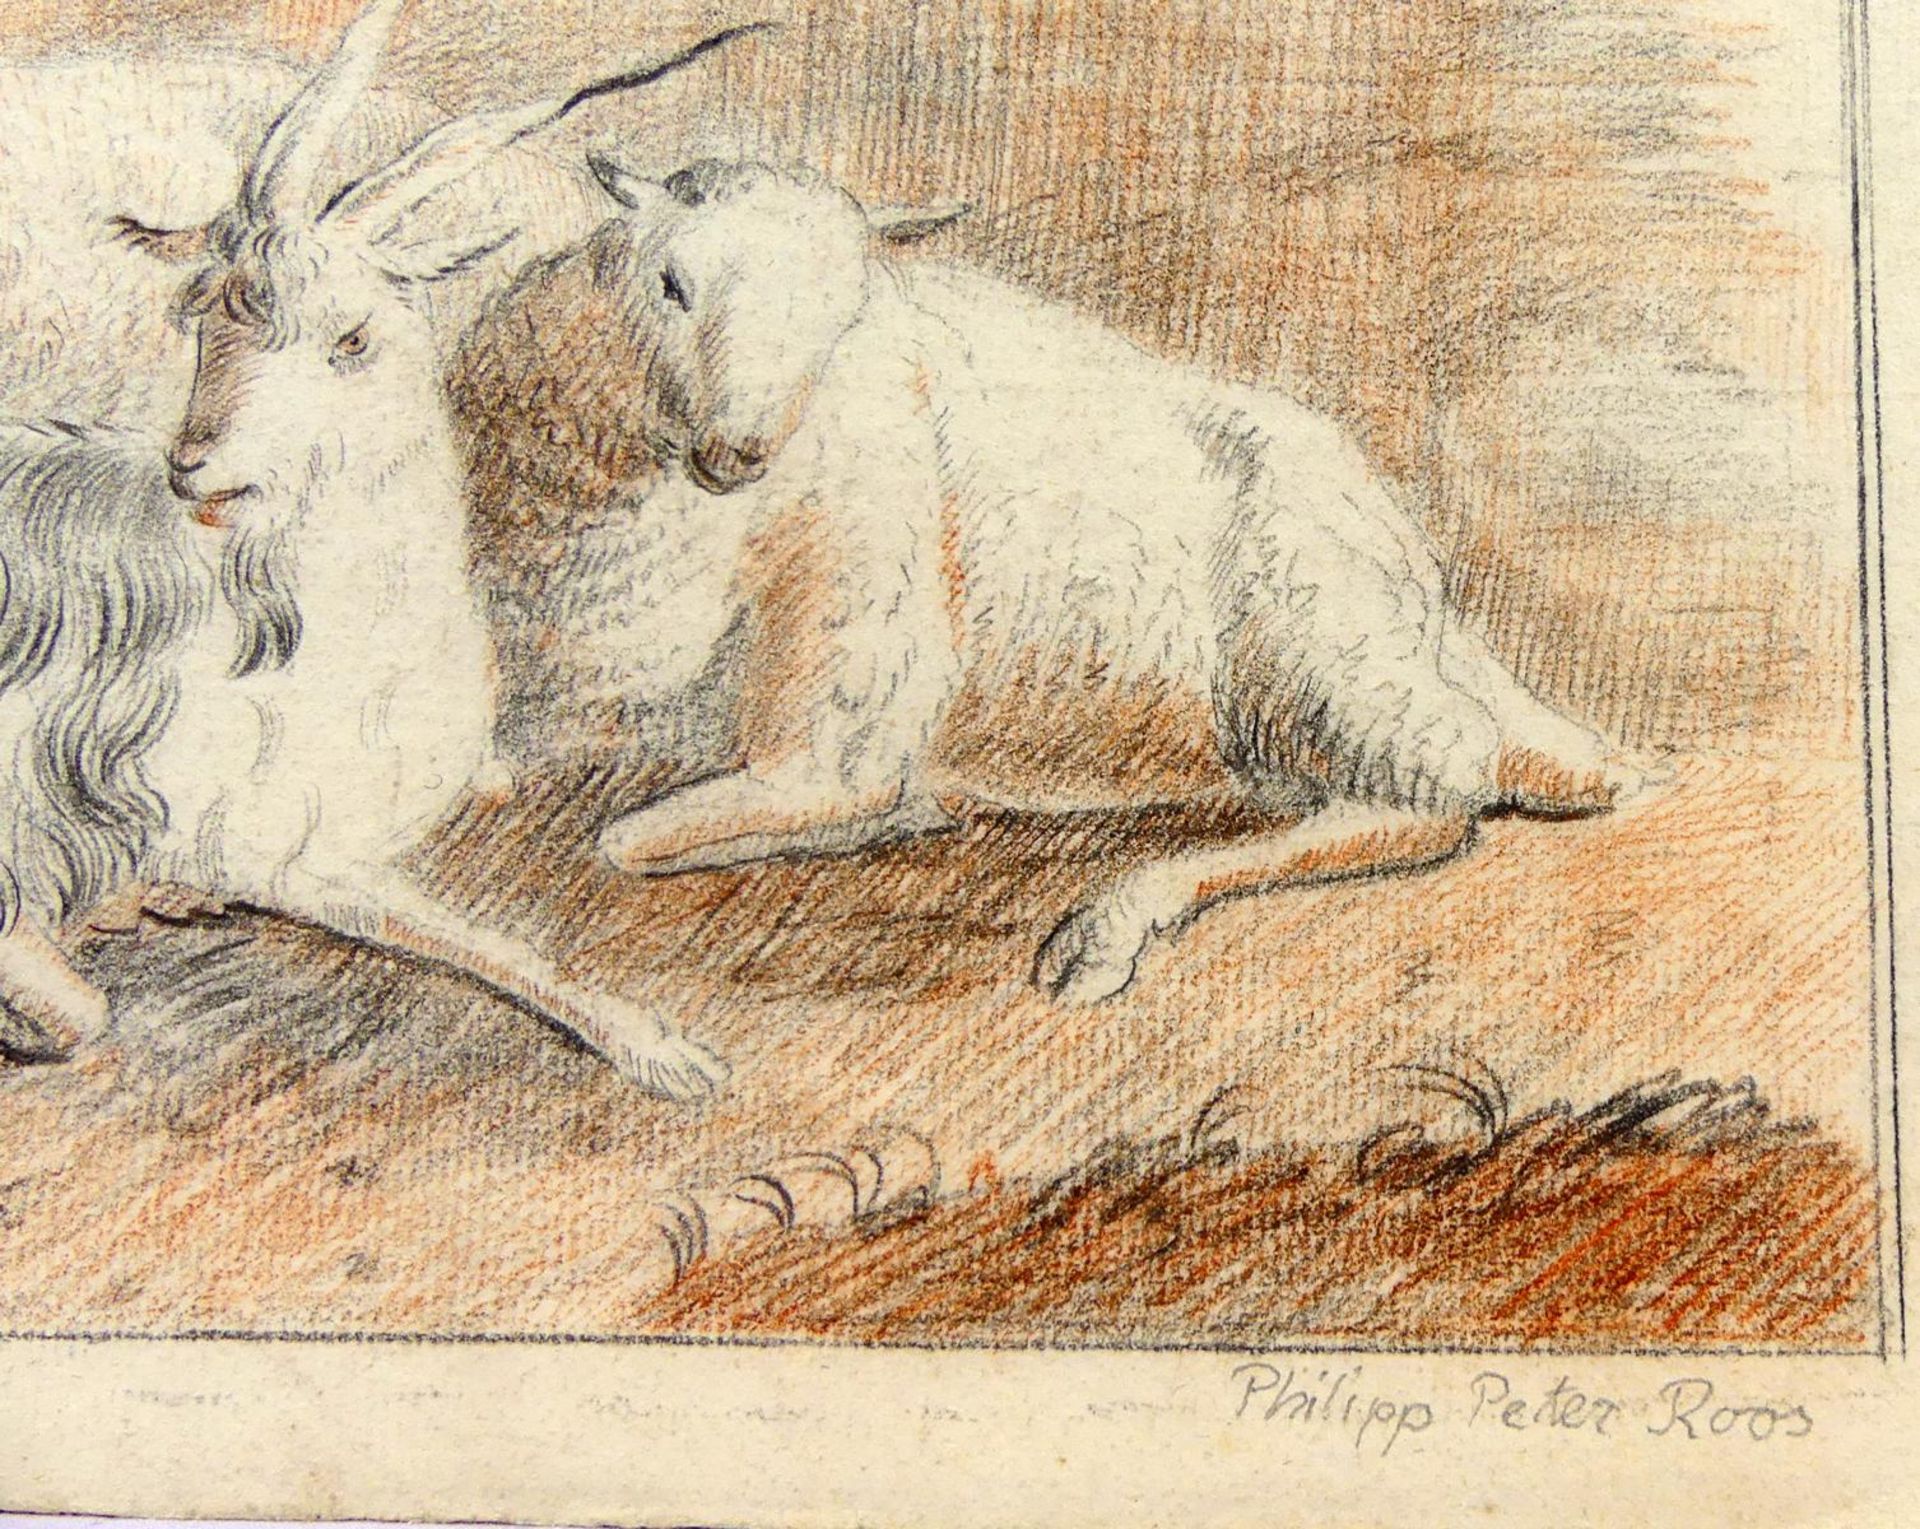 PHILIPP PETER ROOS, "Schafe mit Ziegen", Zeichnung, - Bild 2 aus 2